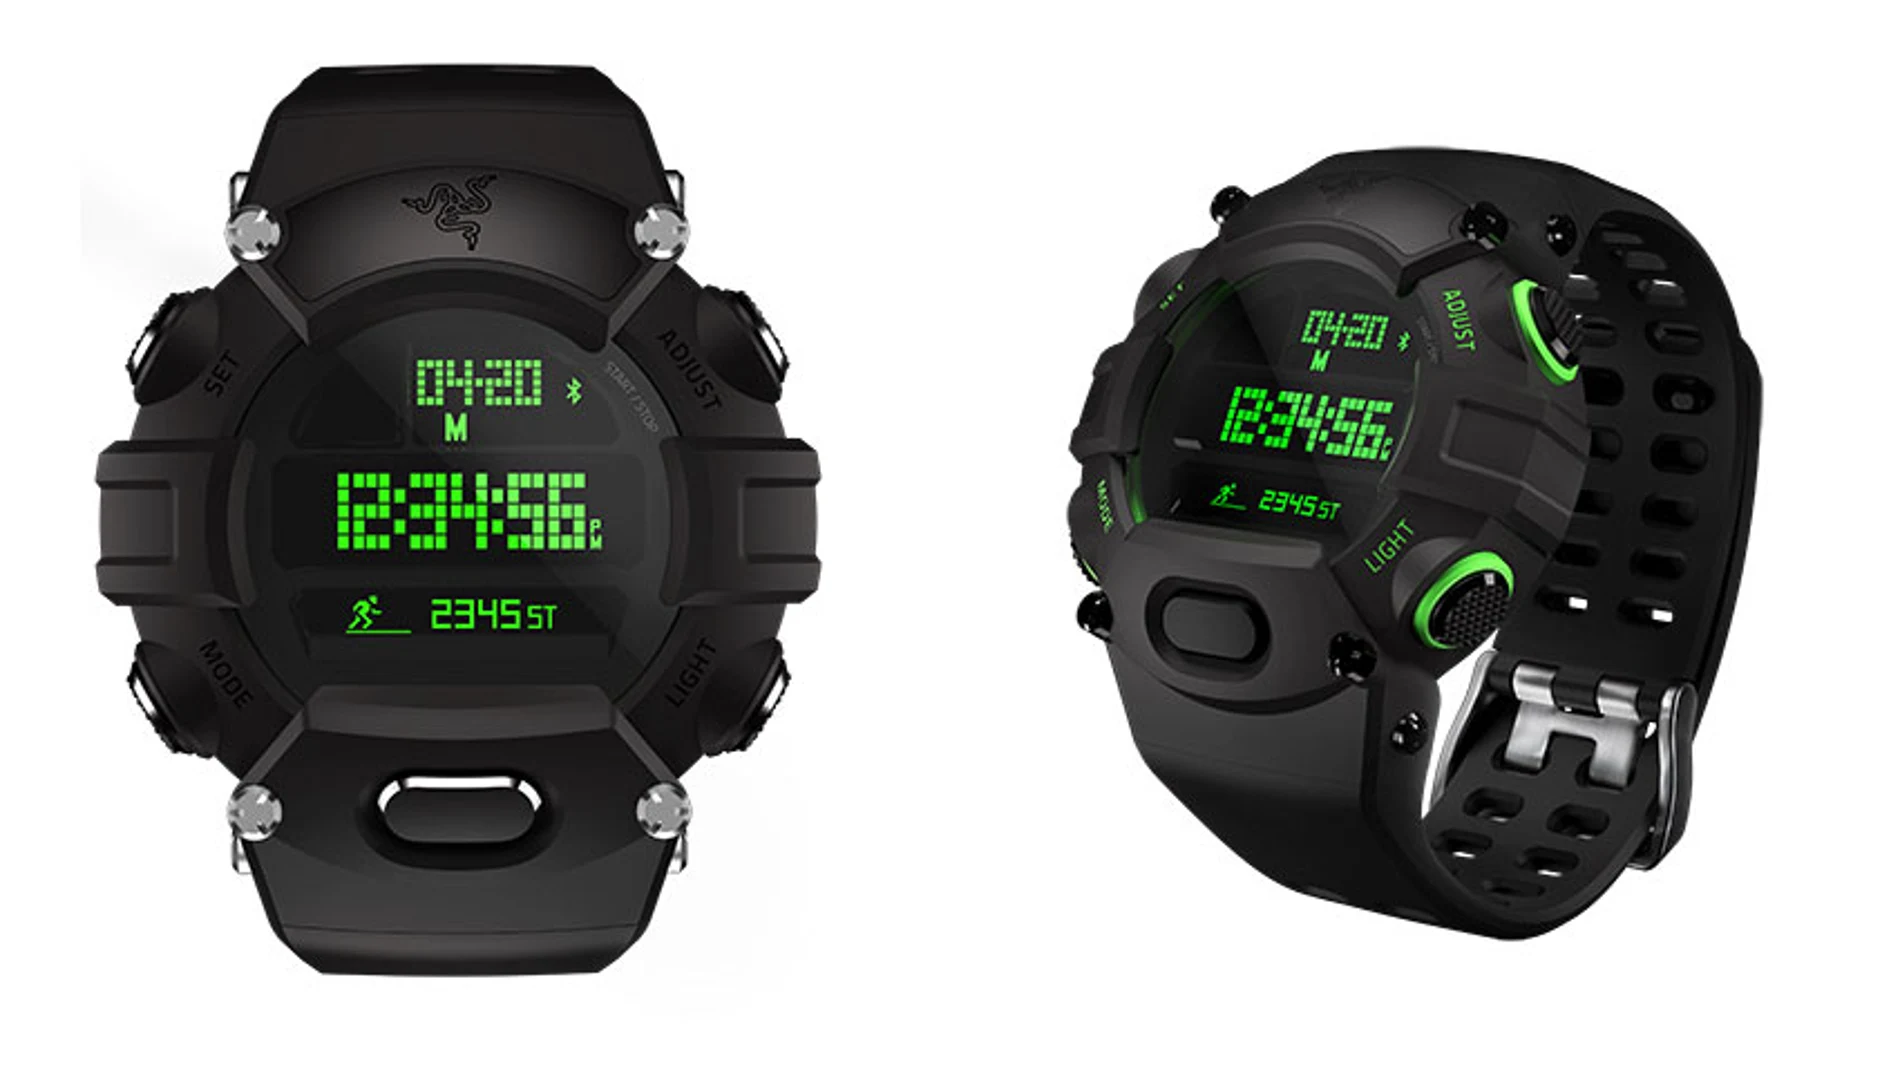 Razer presenta Nabu, el reloj digital con funciones inteligentes